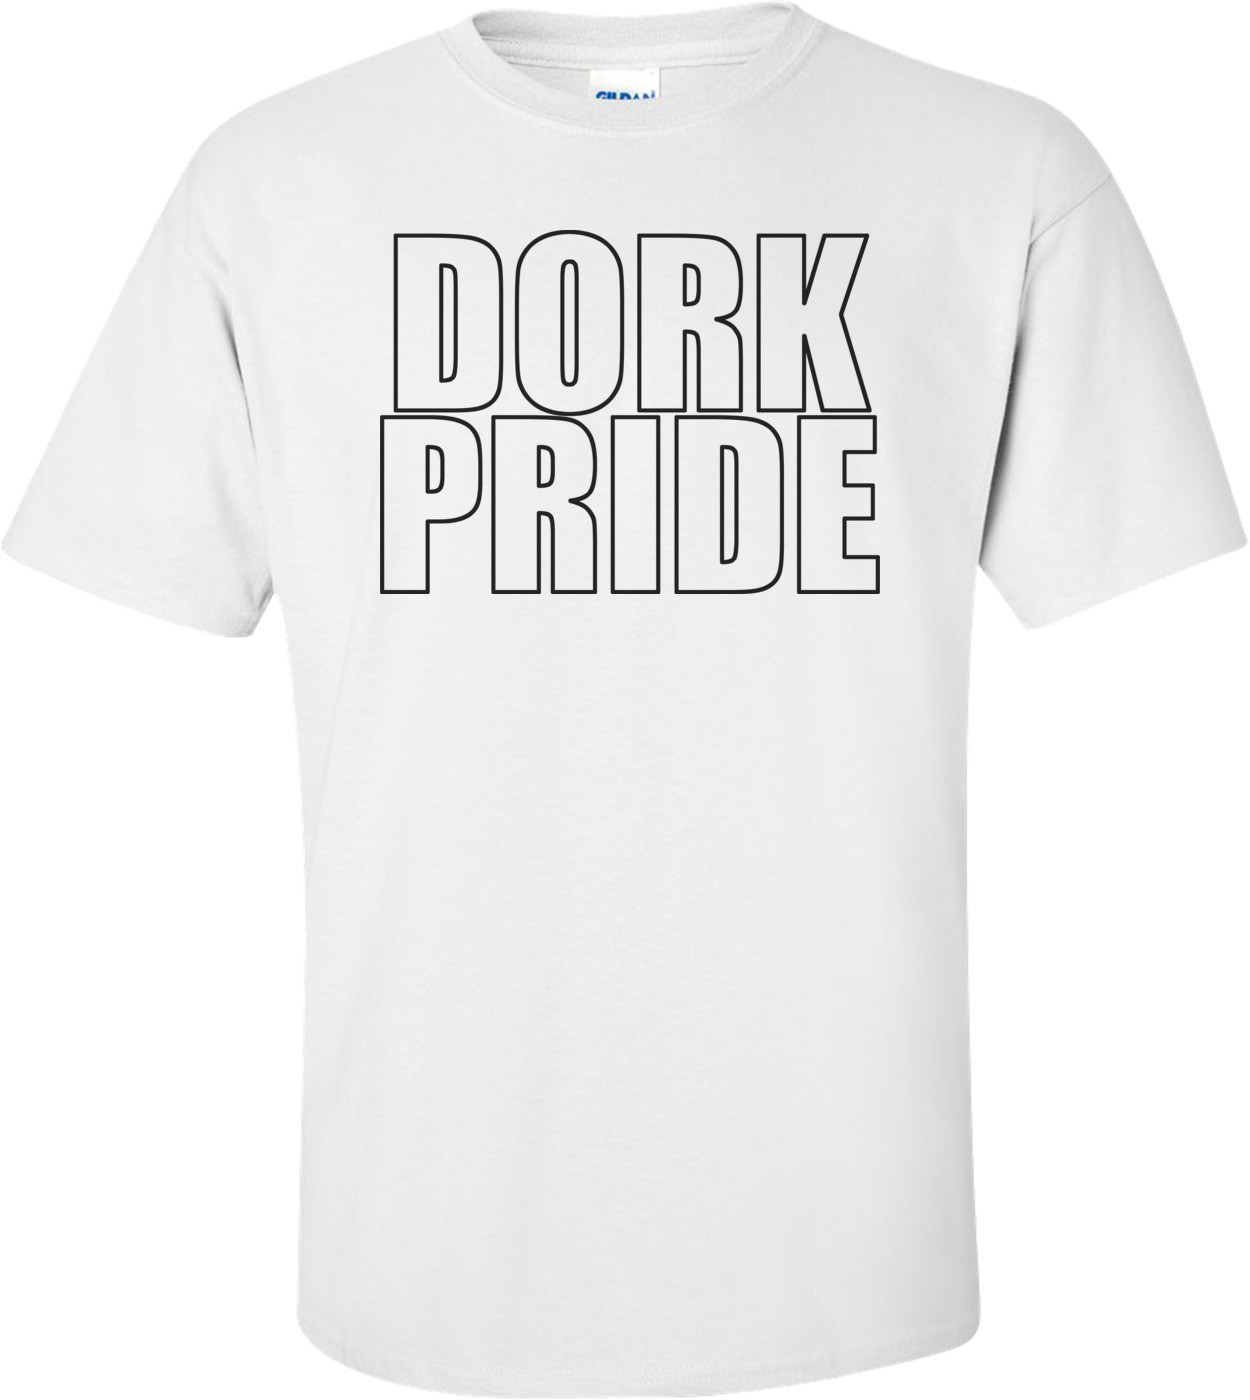 Dork Pride